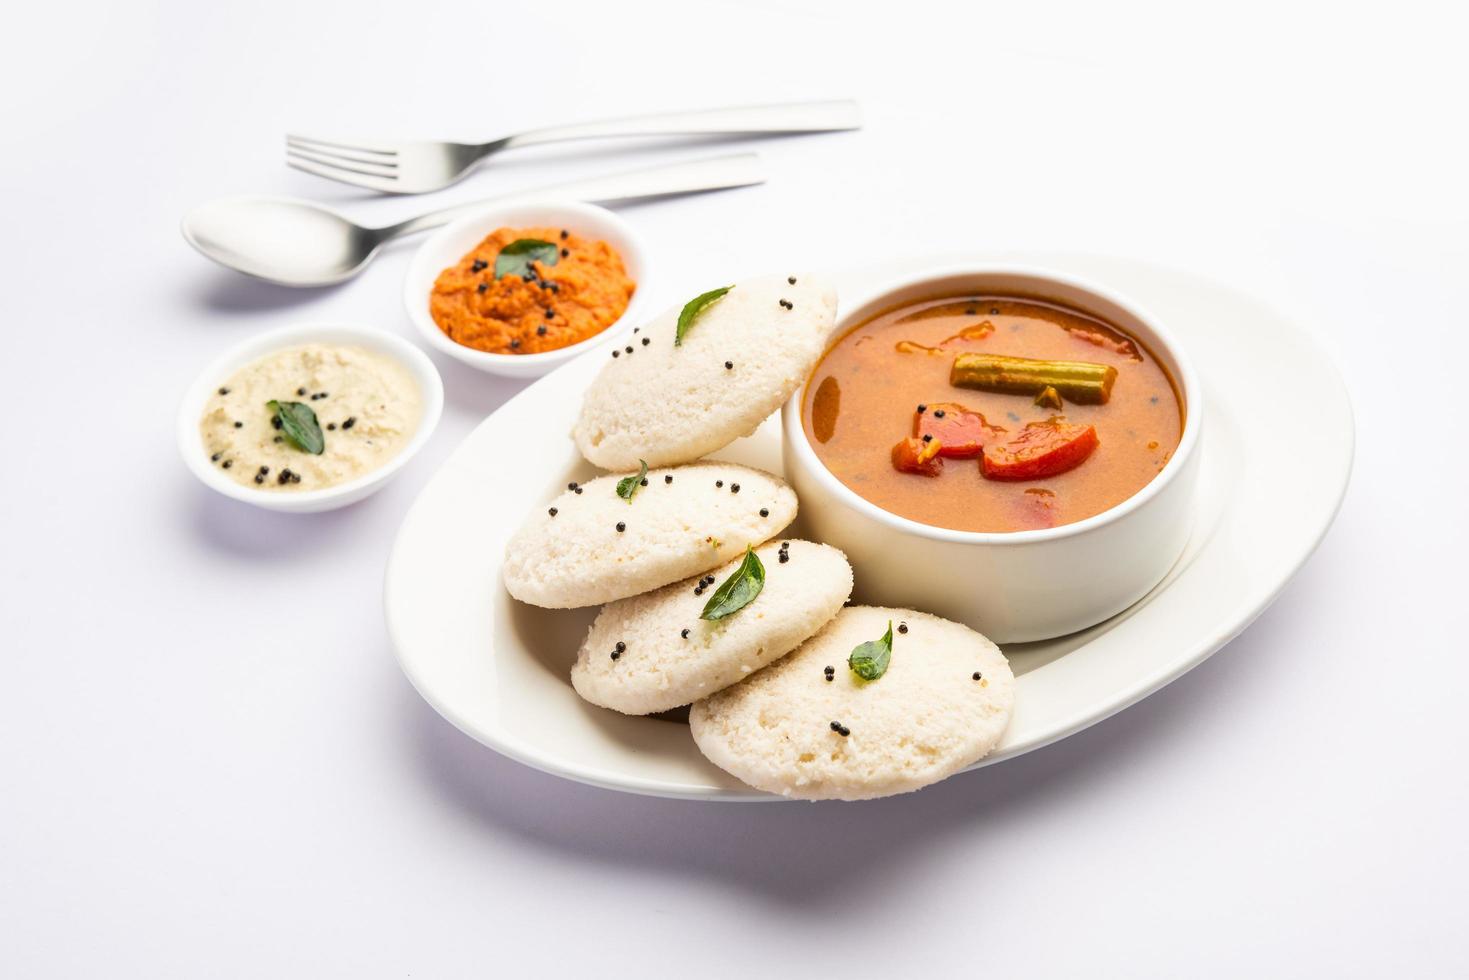 paresseusement sambar ou idli avec sambhar et chutney vert et rouge. petit-déjeuner populaire du sud de l'Inde photo